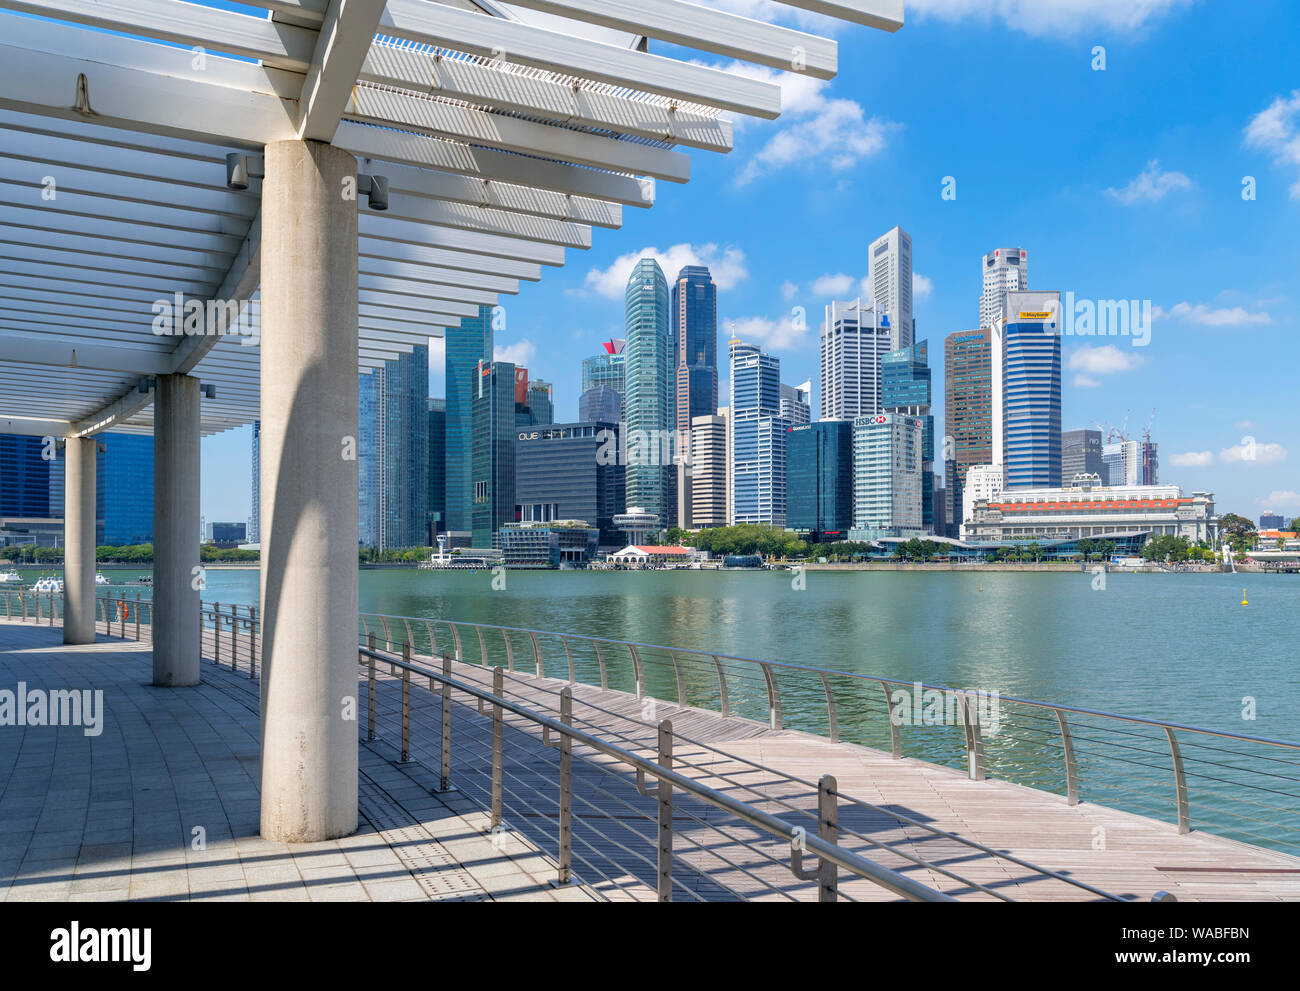 El distrito central de negocios (CBD) de Marina Bay, la ciudad de Singapur, Singapur Foto de stock